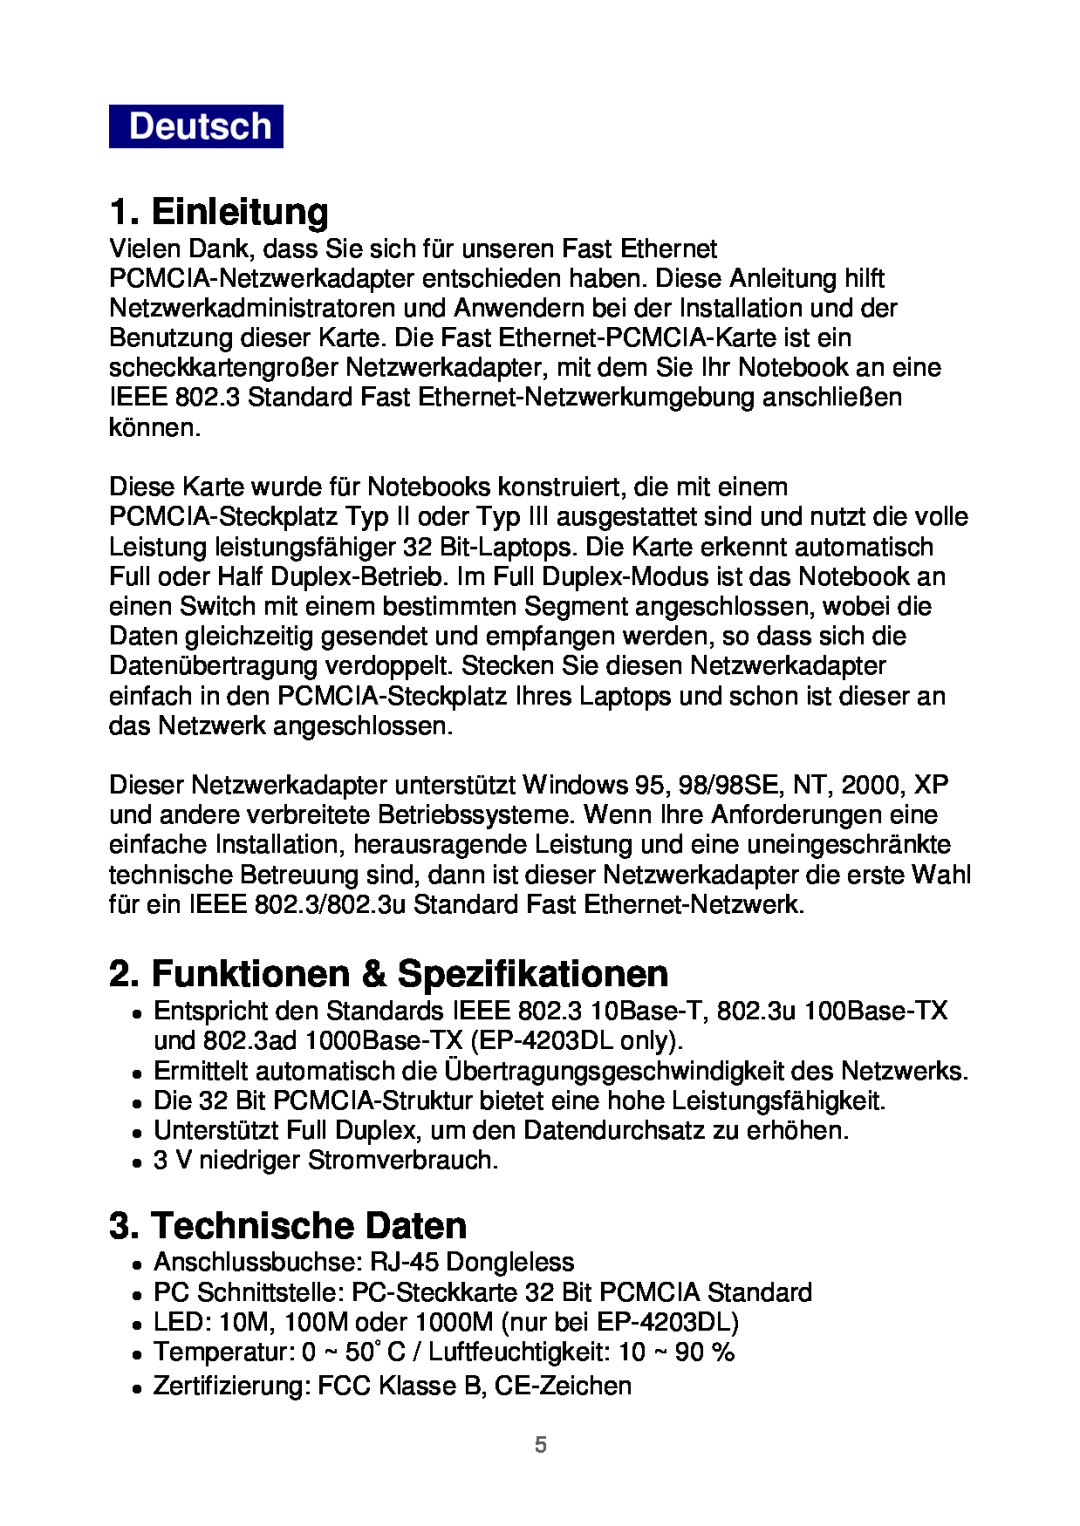 Edimax Technology Ethernet Cardbus Adapter manual Deutsch, Einleitung, Funktionen & Spezifikationen, Technische Daten 